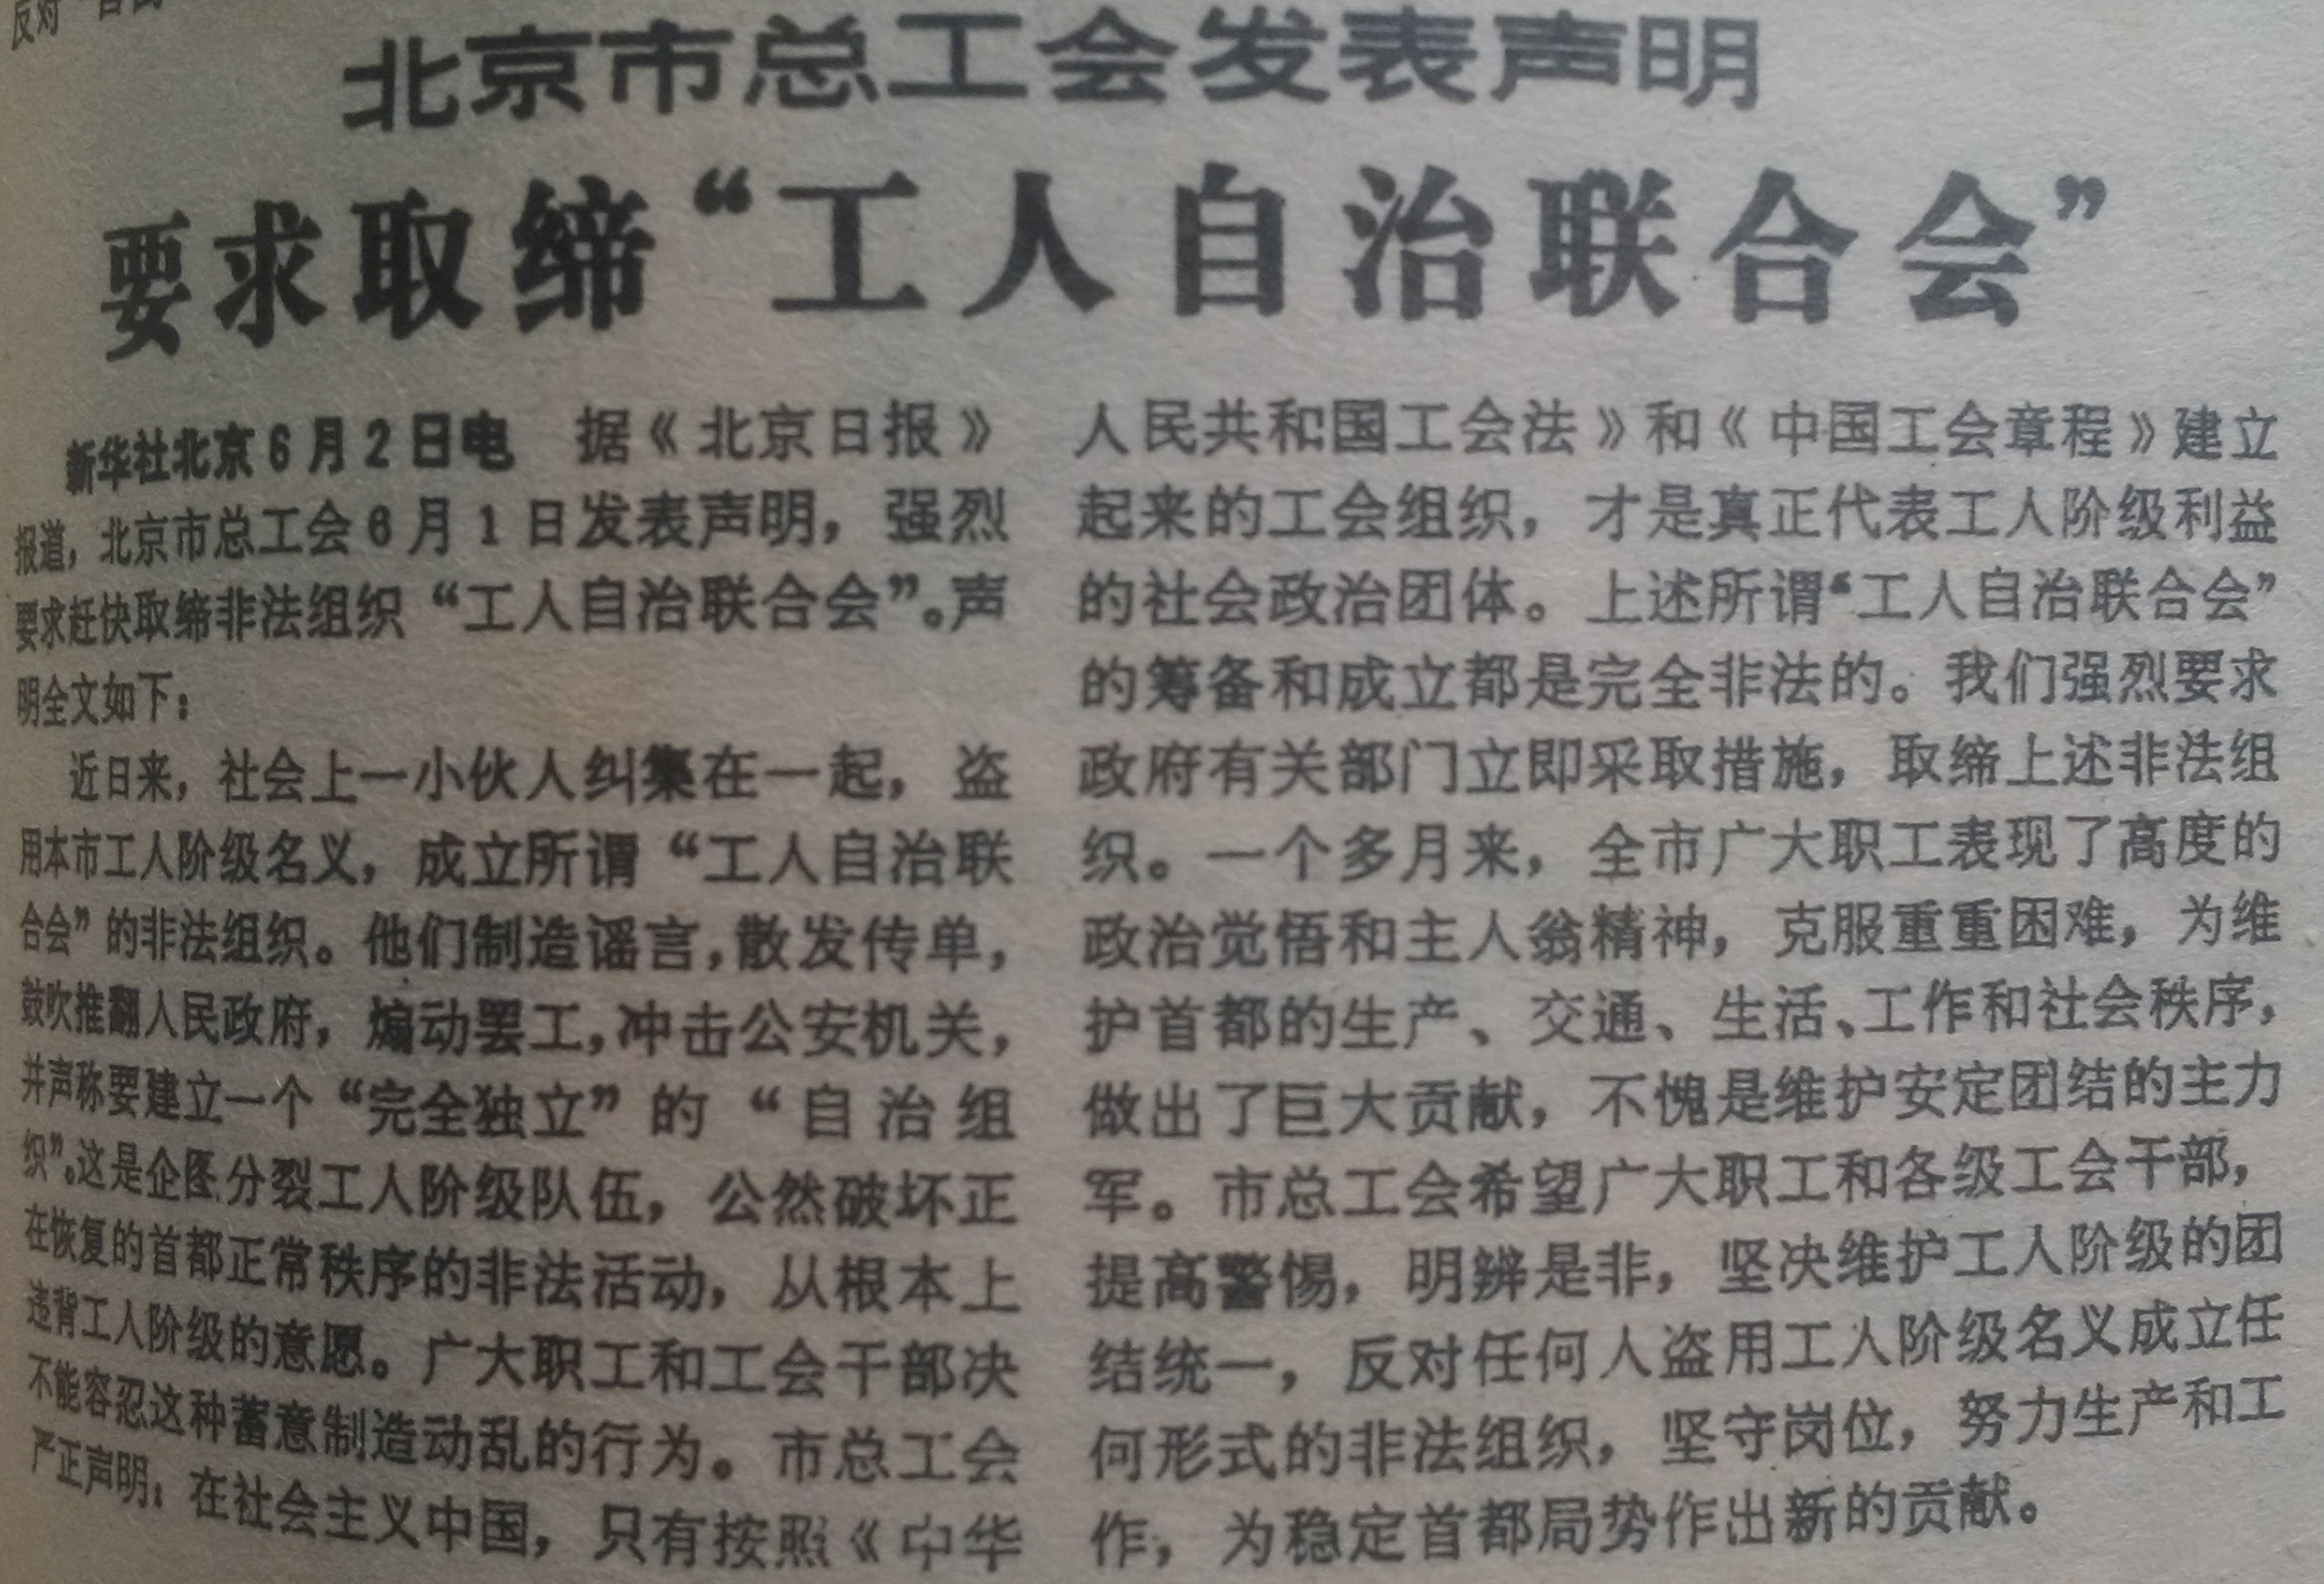 1989年6月3日《人民日報》頭版刊載的北京市總工會要求取締工自聯的聲明。